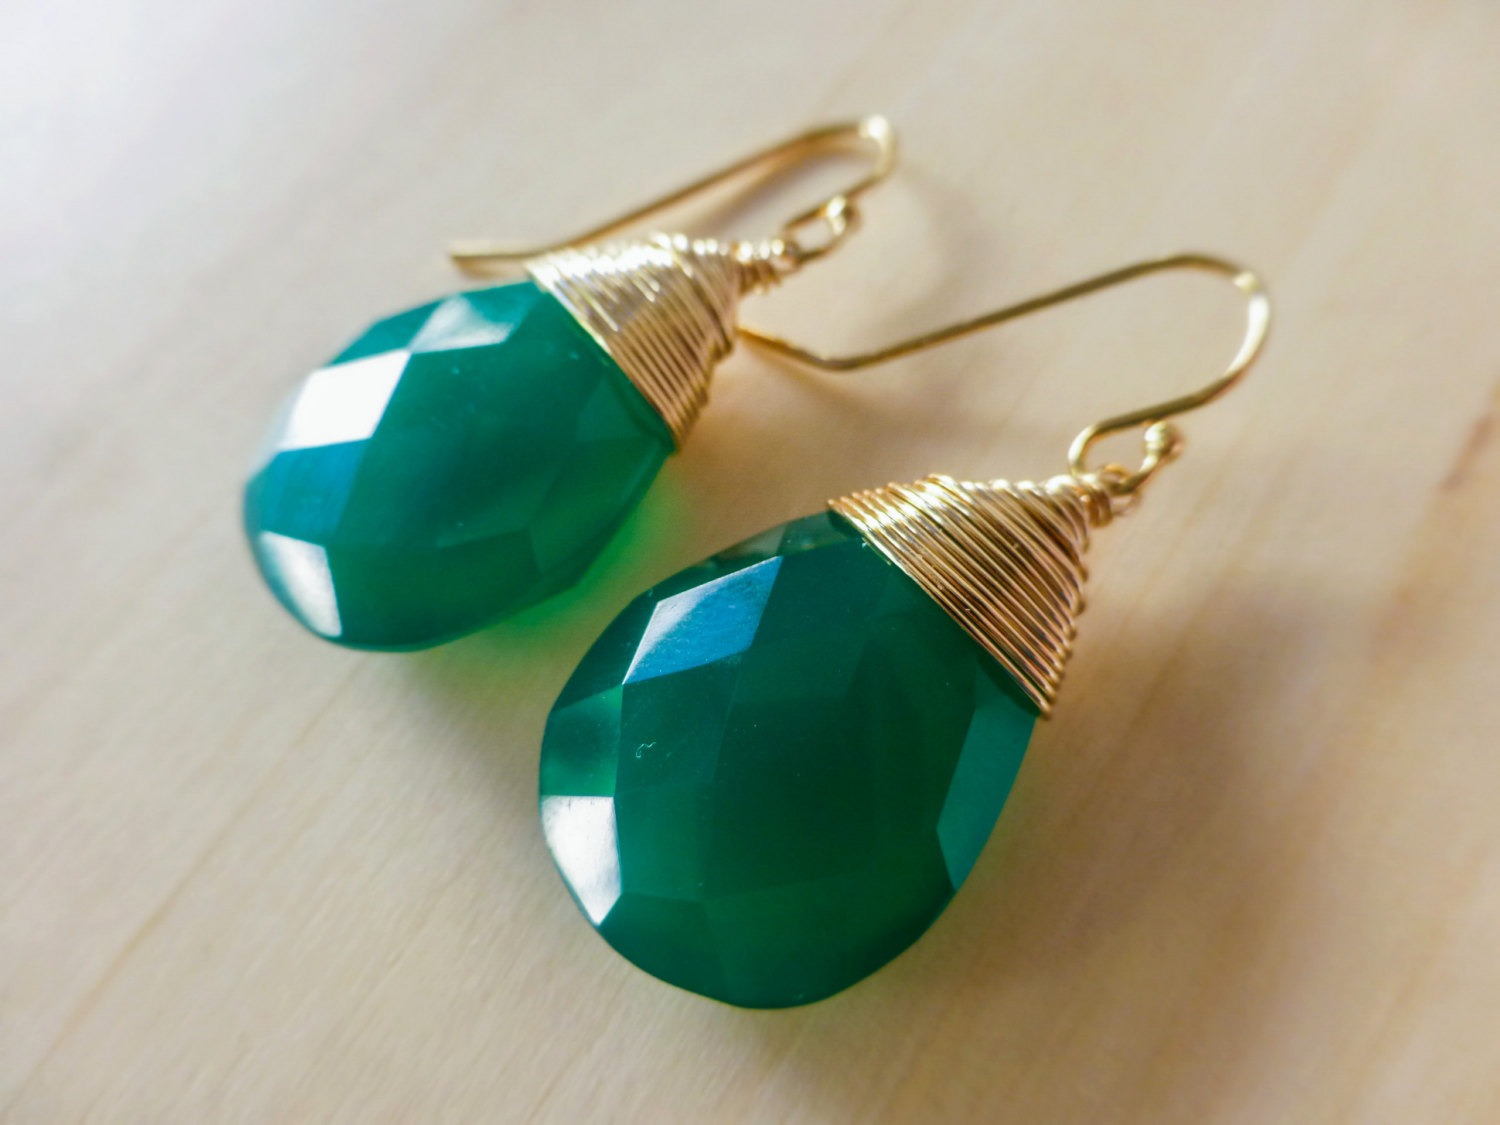 Green Onyx Teardrop Wire Wrapped Earrings in Gold Filled